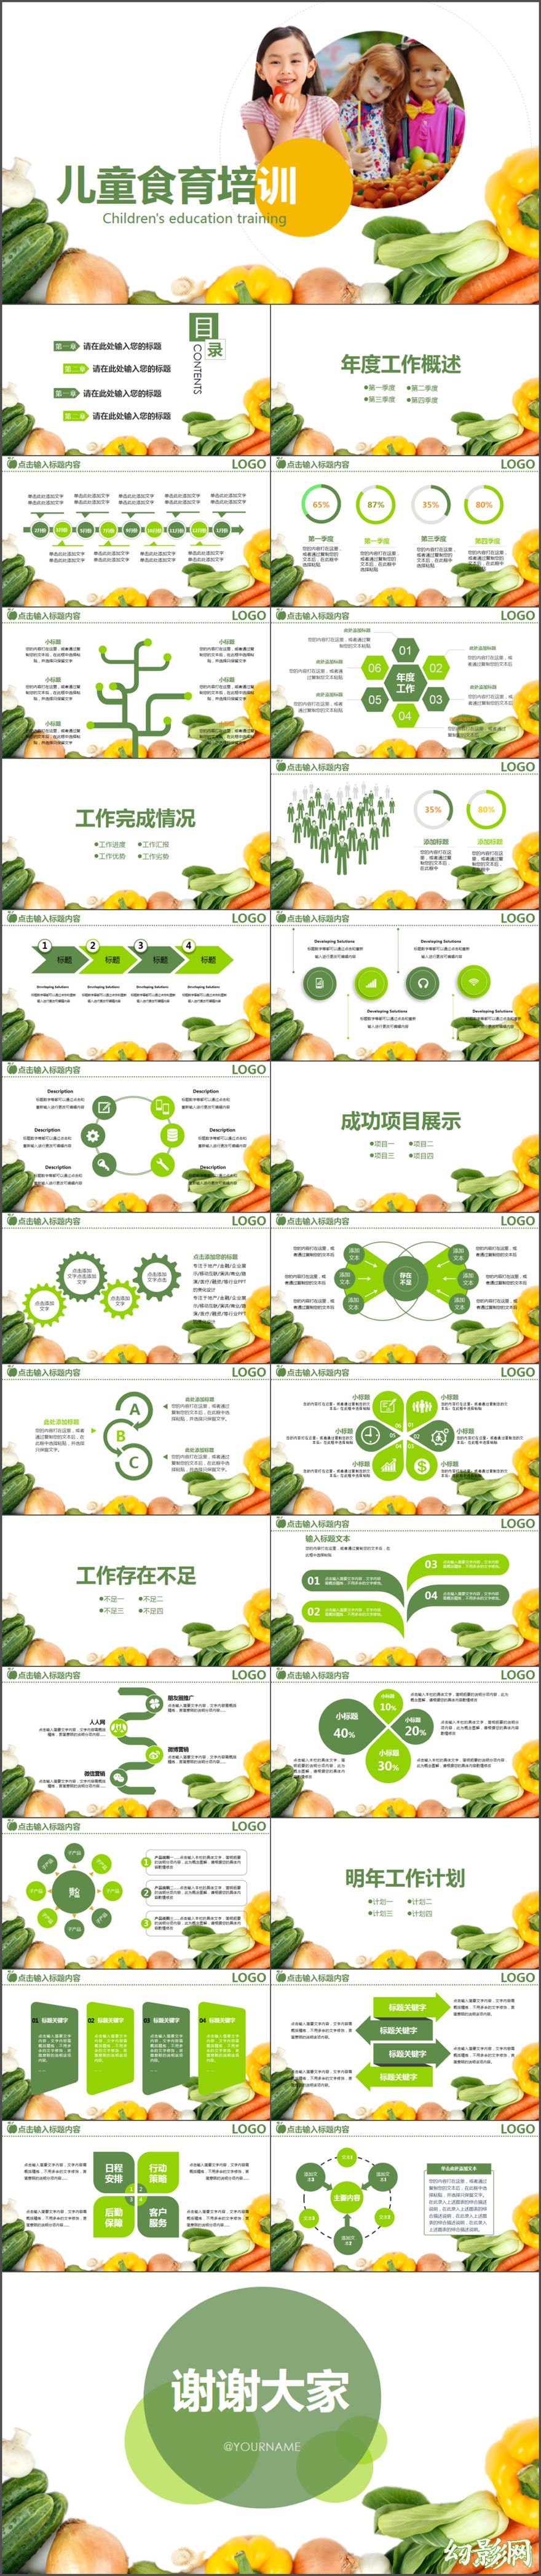 营养师健康教育生活医疗保健产品绿色生态类动态PPT模版